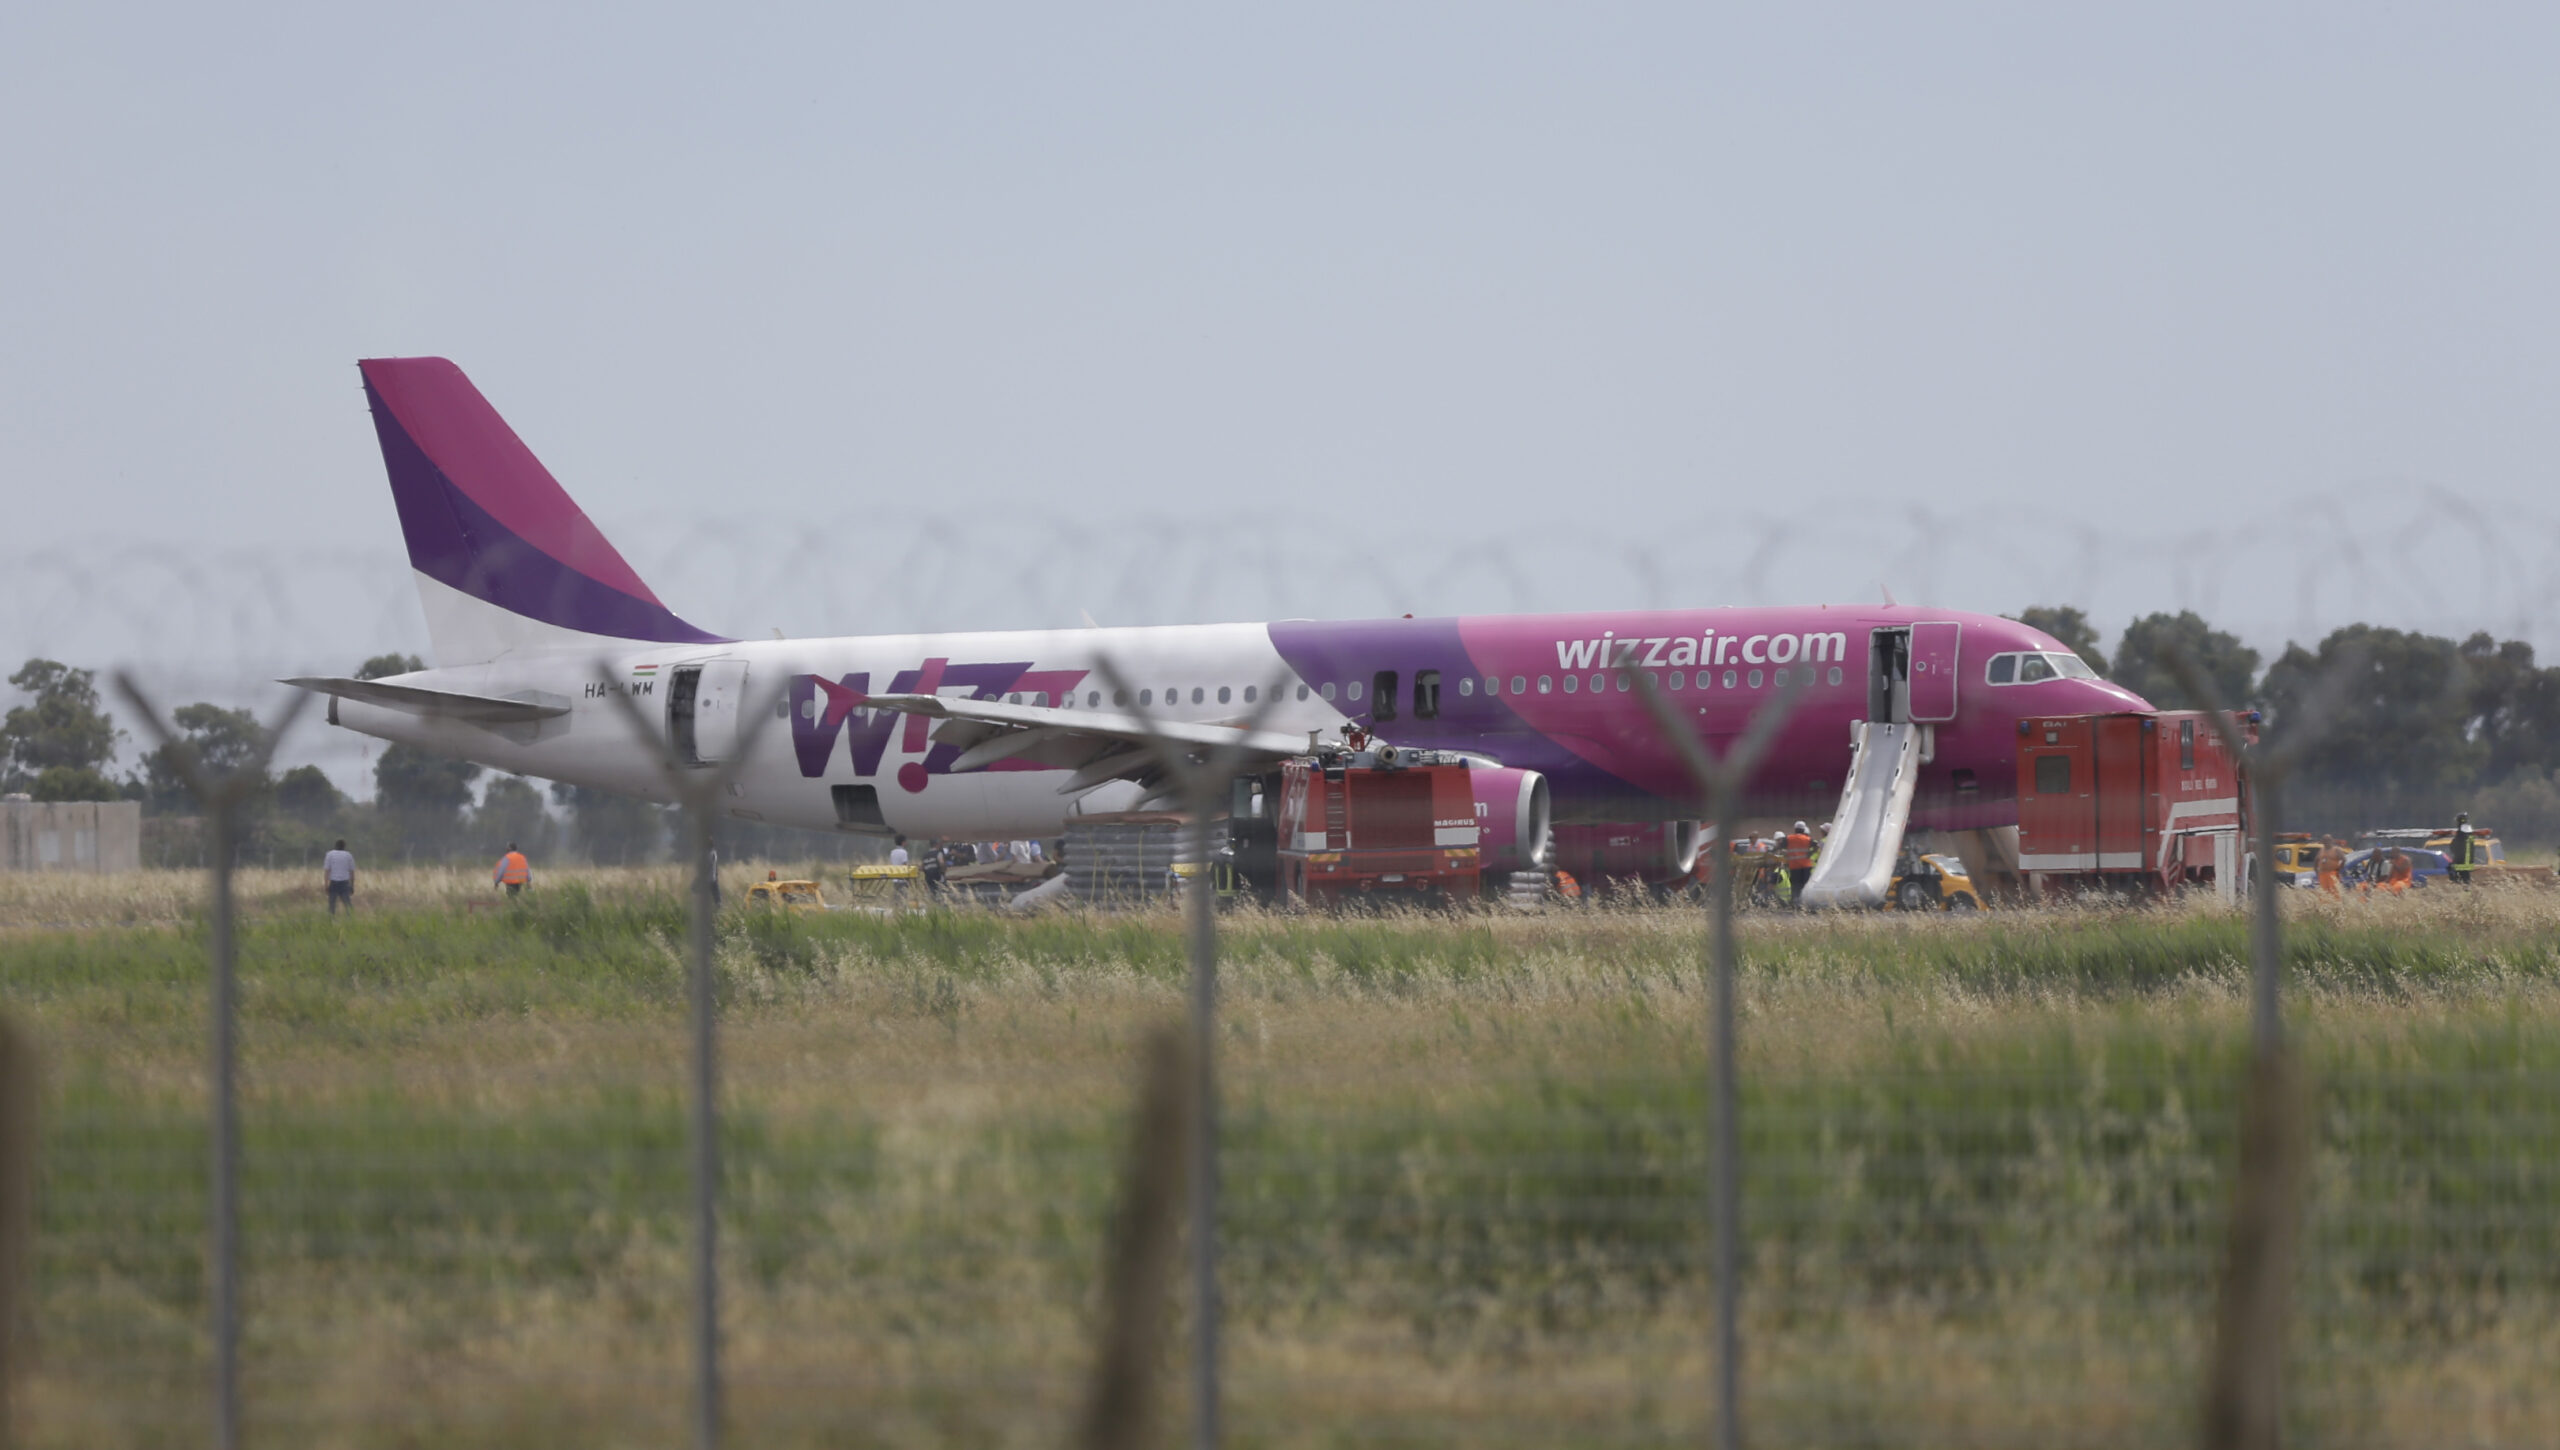 Ουγγαρία: Η αεροπορική εταιρεία Wizz Air αναστέλλει τις πτήσεις προς και από την πρωτεύουσα της Μολδαβίας για «λόγους ασφαλείας»